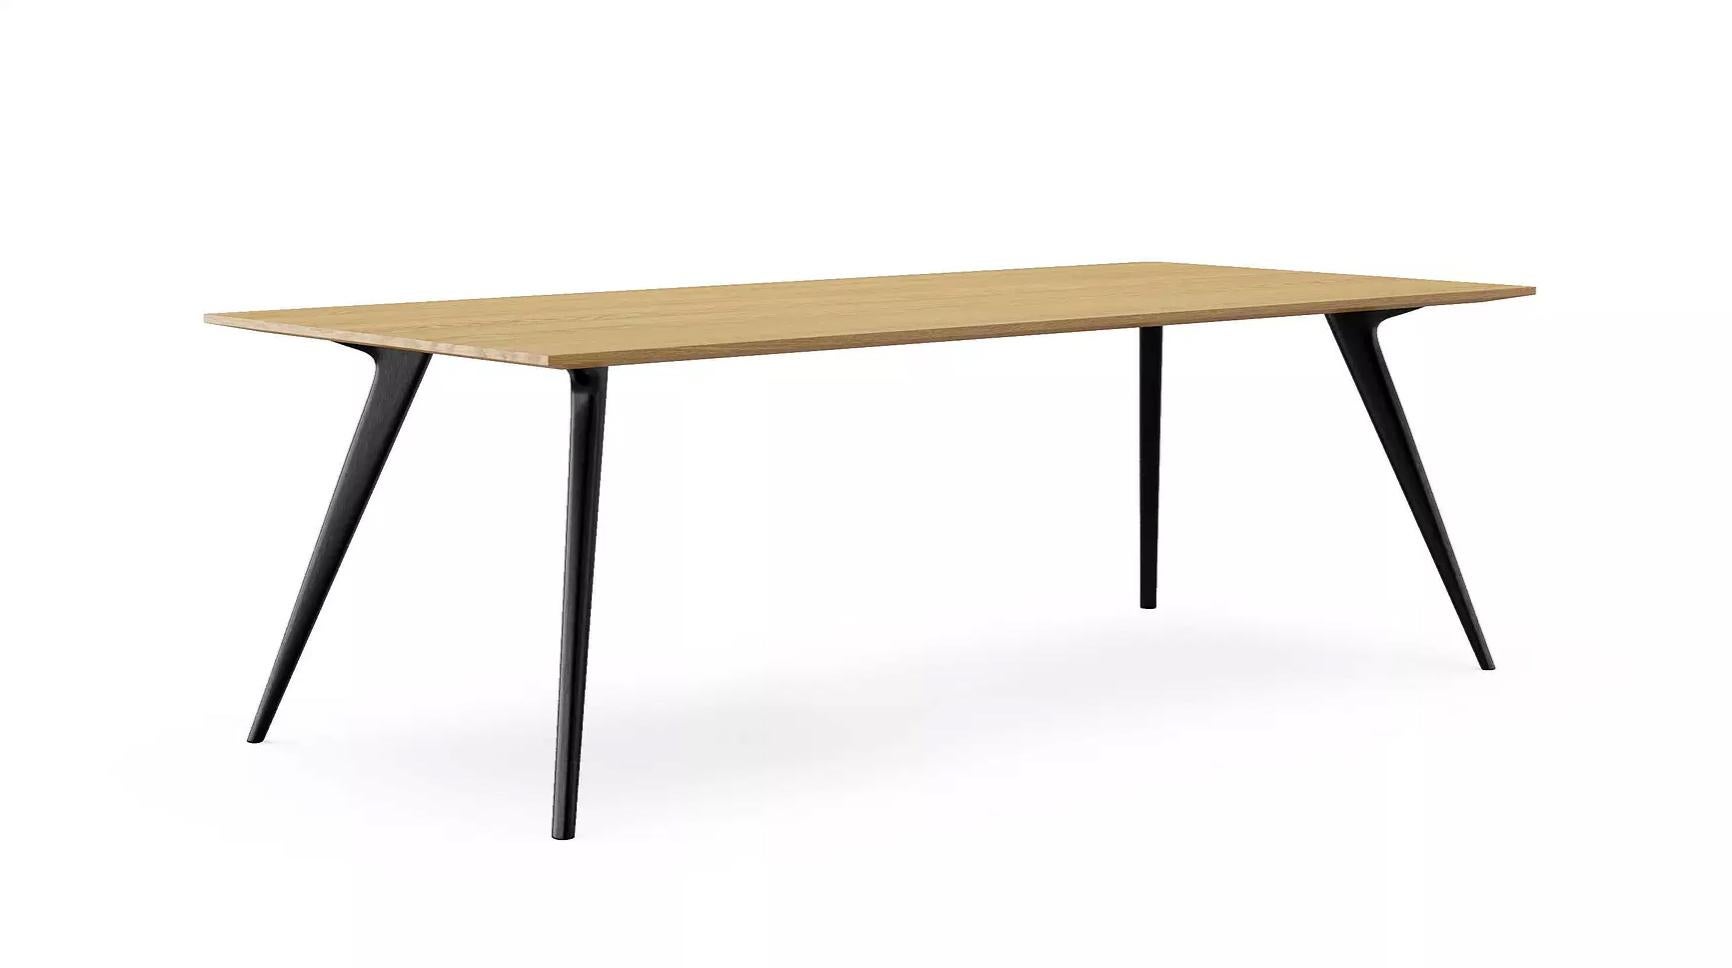 Table à manger Waldron de Dare Studio, 2015
Dimensions : H 73 cm, P 100 cm, L 220 cm
Matériaux : Chêne blanc européen, aluminium

Egalement disponible en noyer américain et en finition bois huilé ciré.

Dare Studio est une société de design